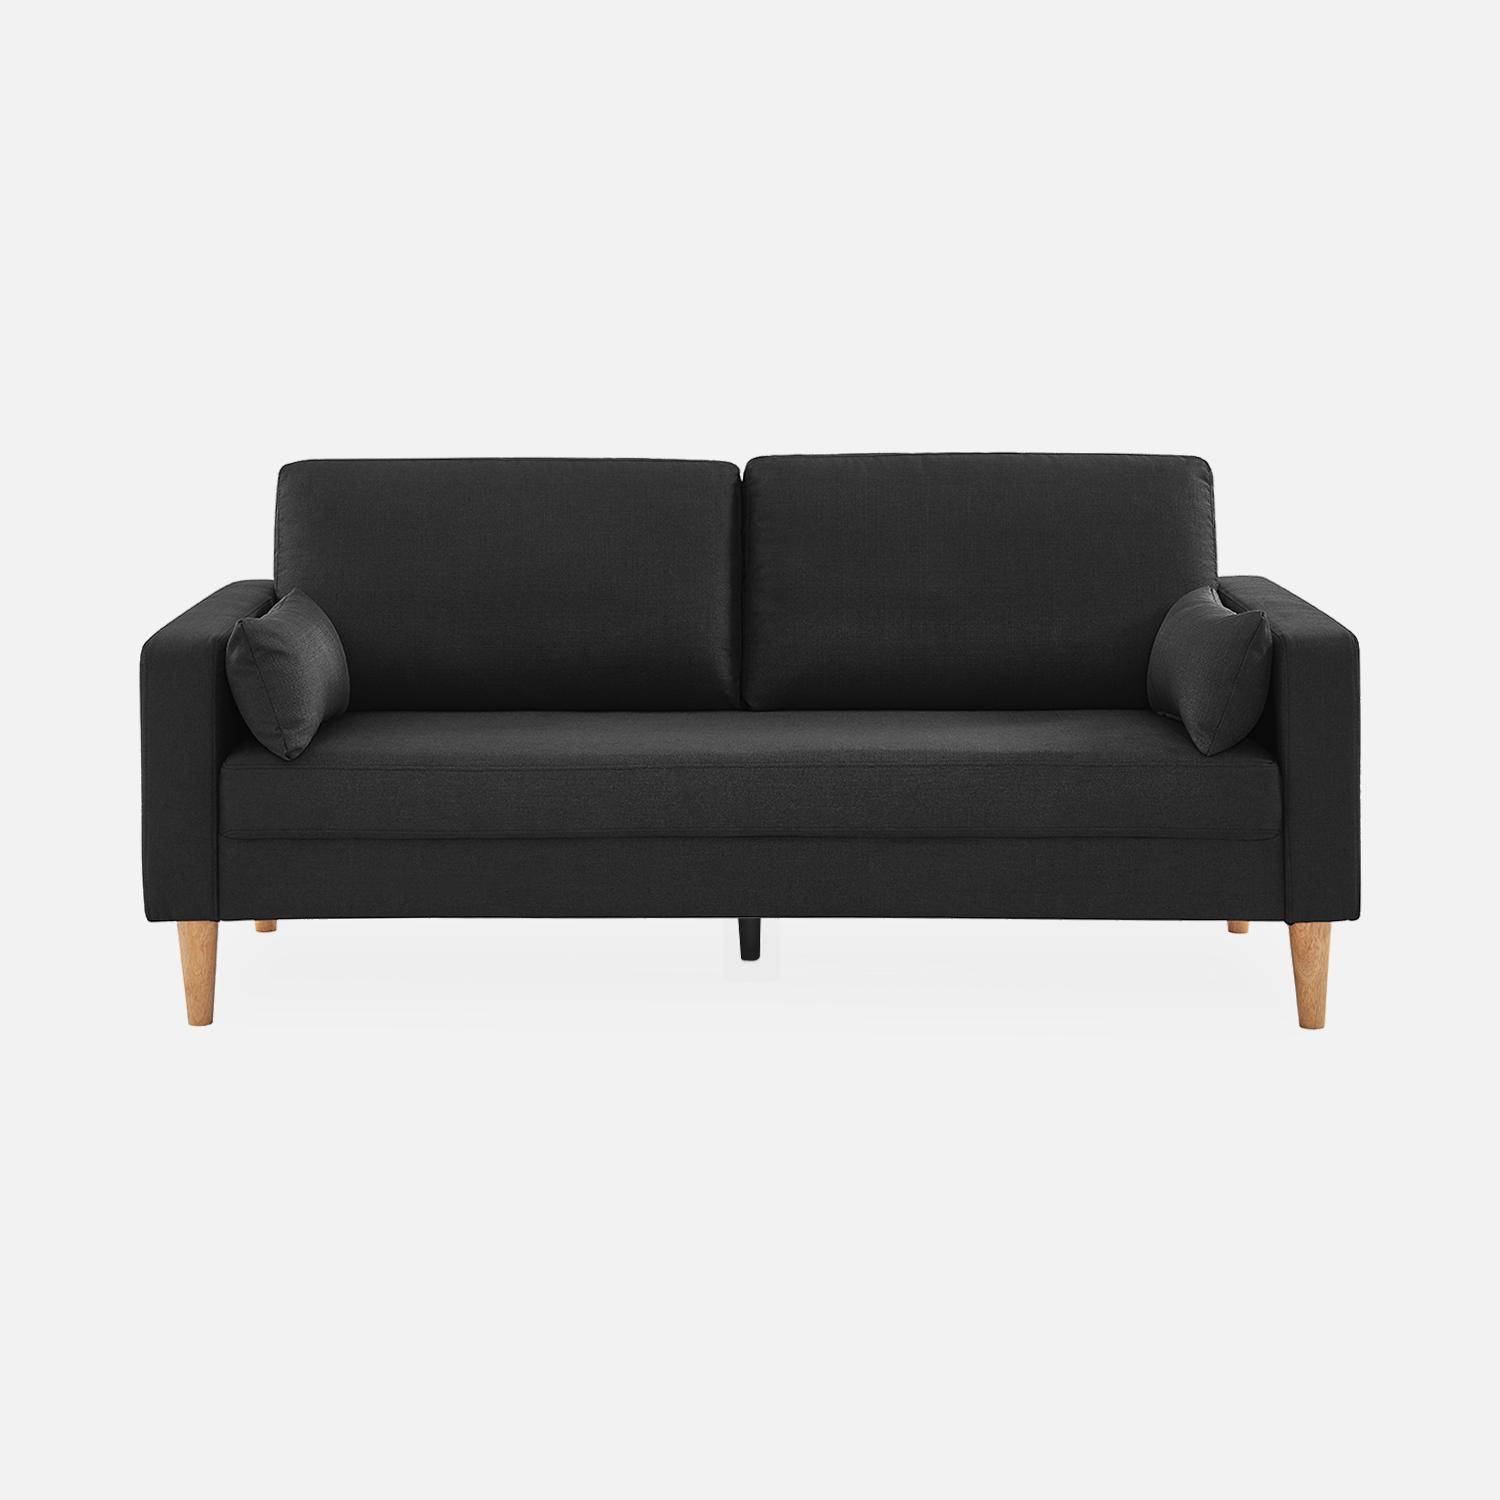 Donkergrijze stoffen driezits sofa - Bjorn - 3-zits bank met houten poten, scandinavische stijl   Photo3